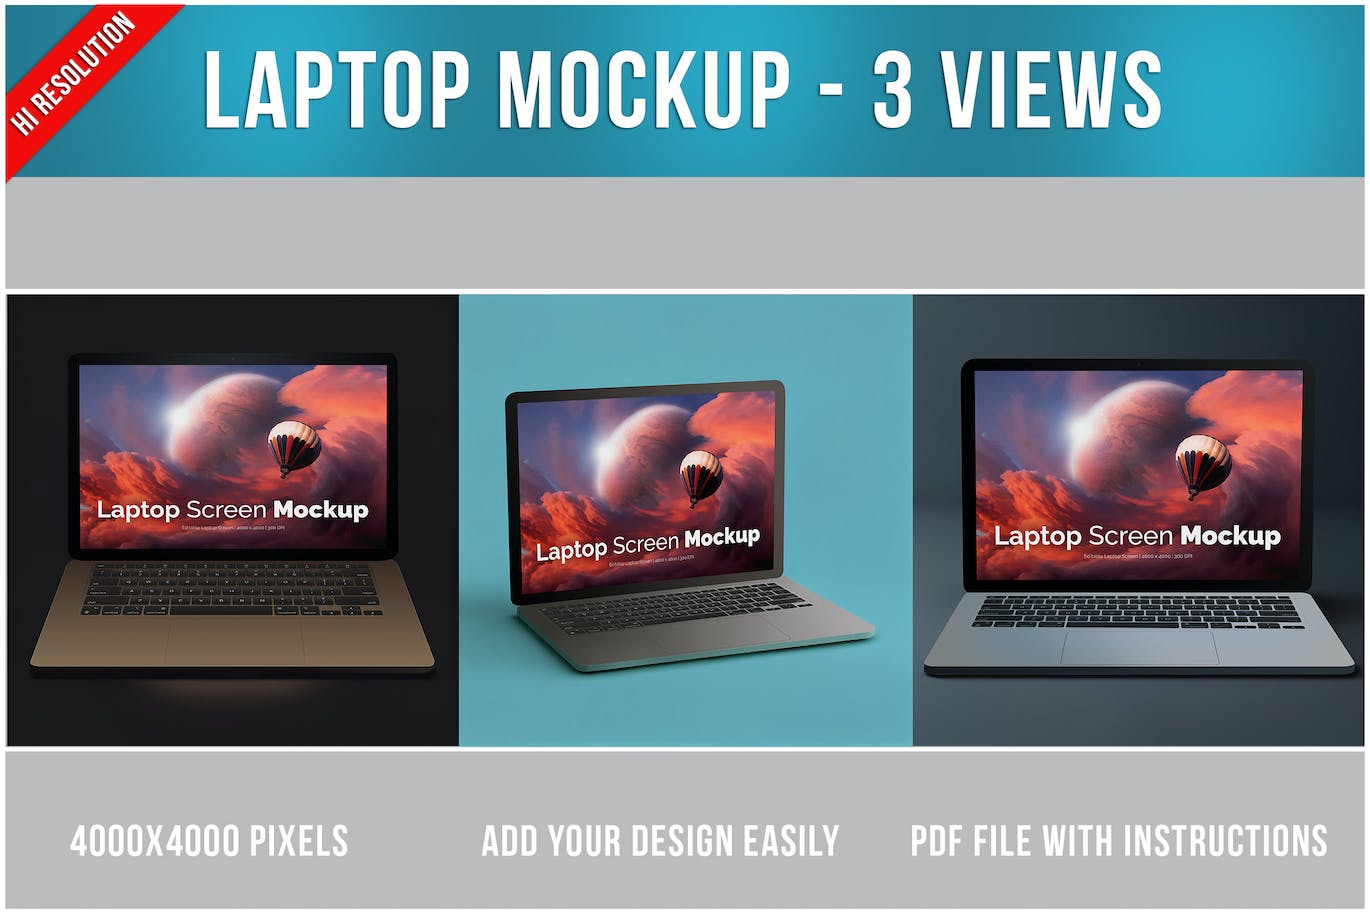 笔记本电脑MacBook样机 Laptop Mockup 样机素材 第1张